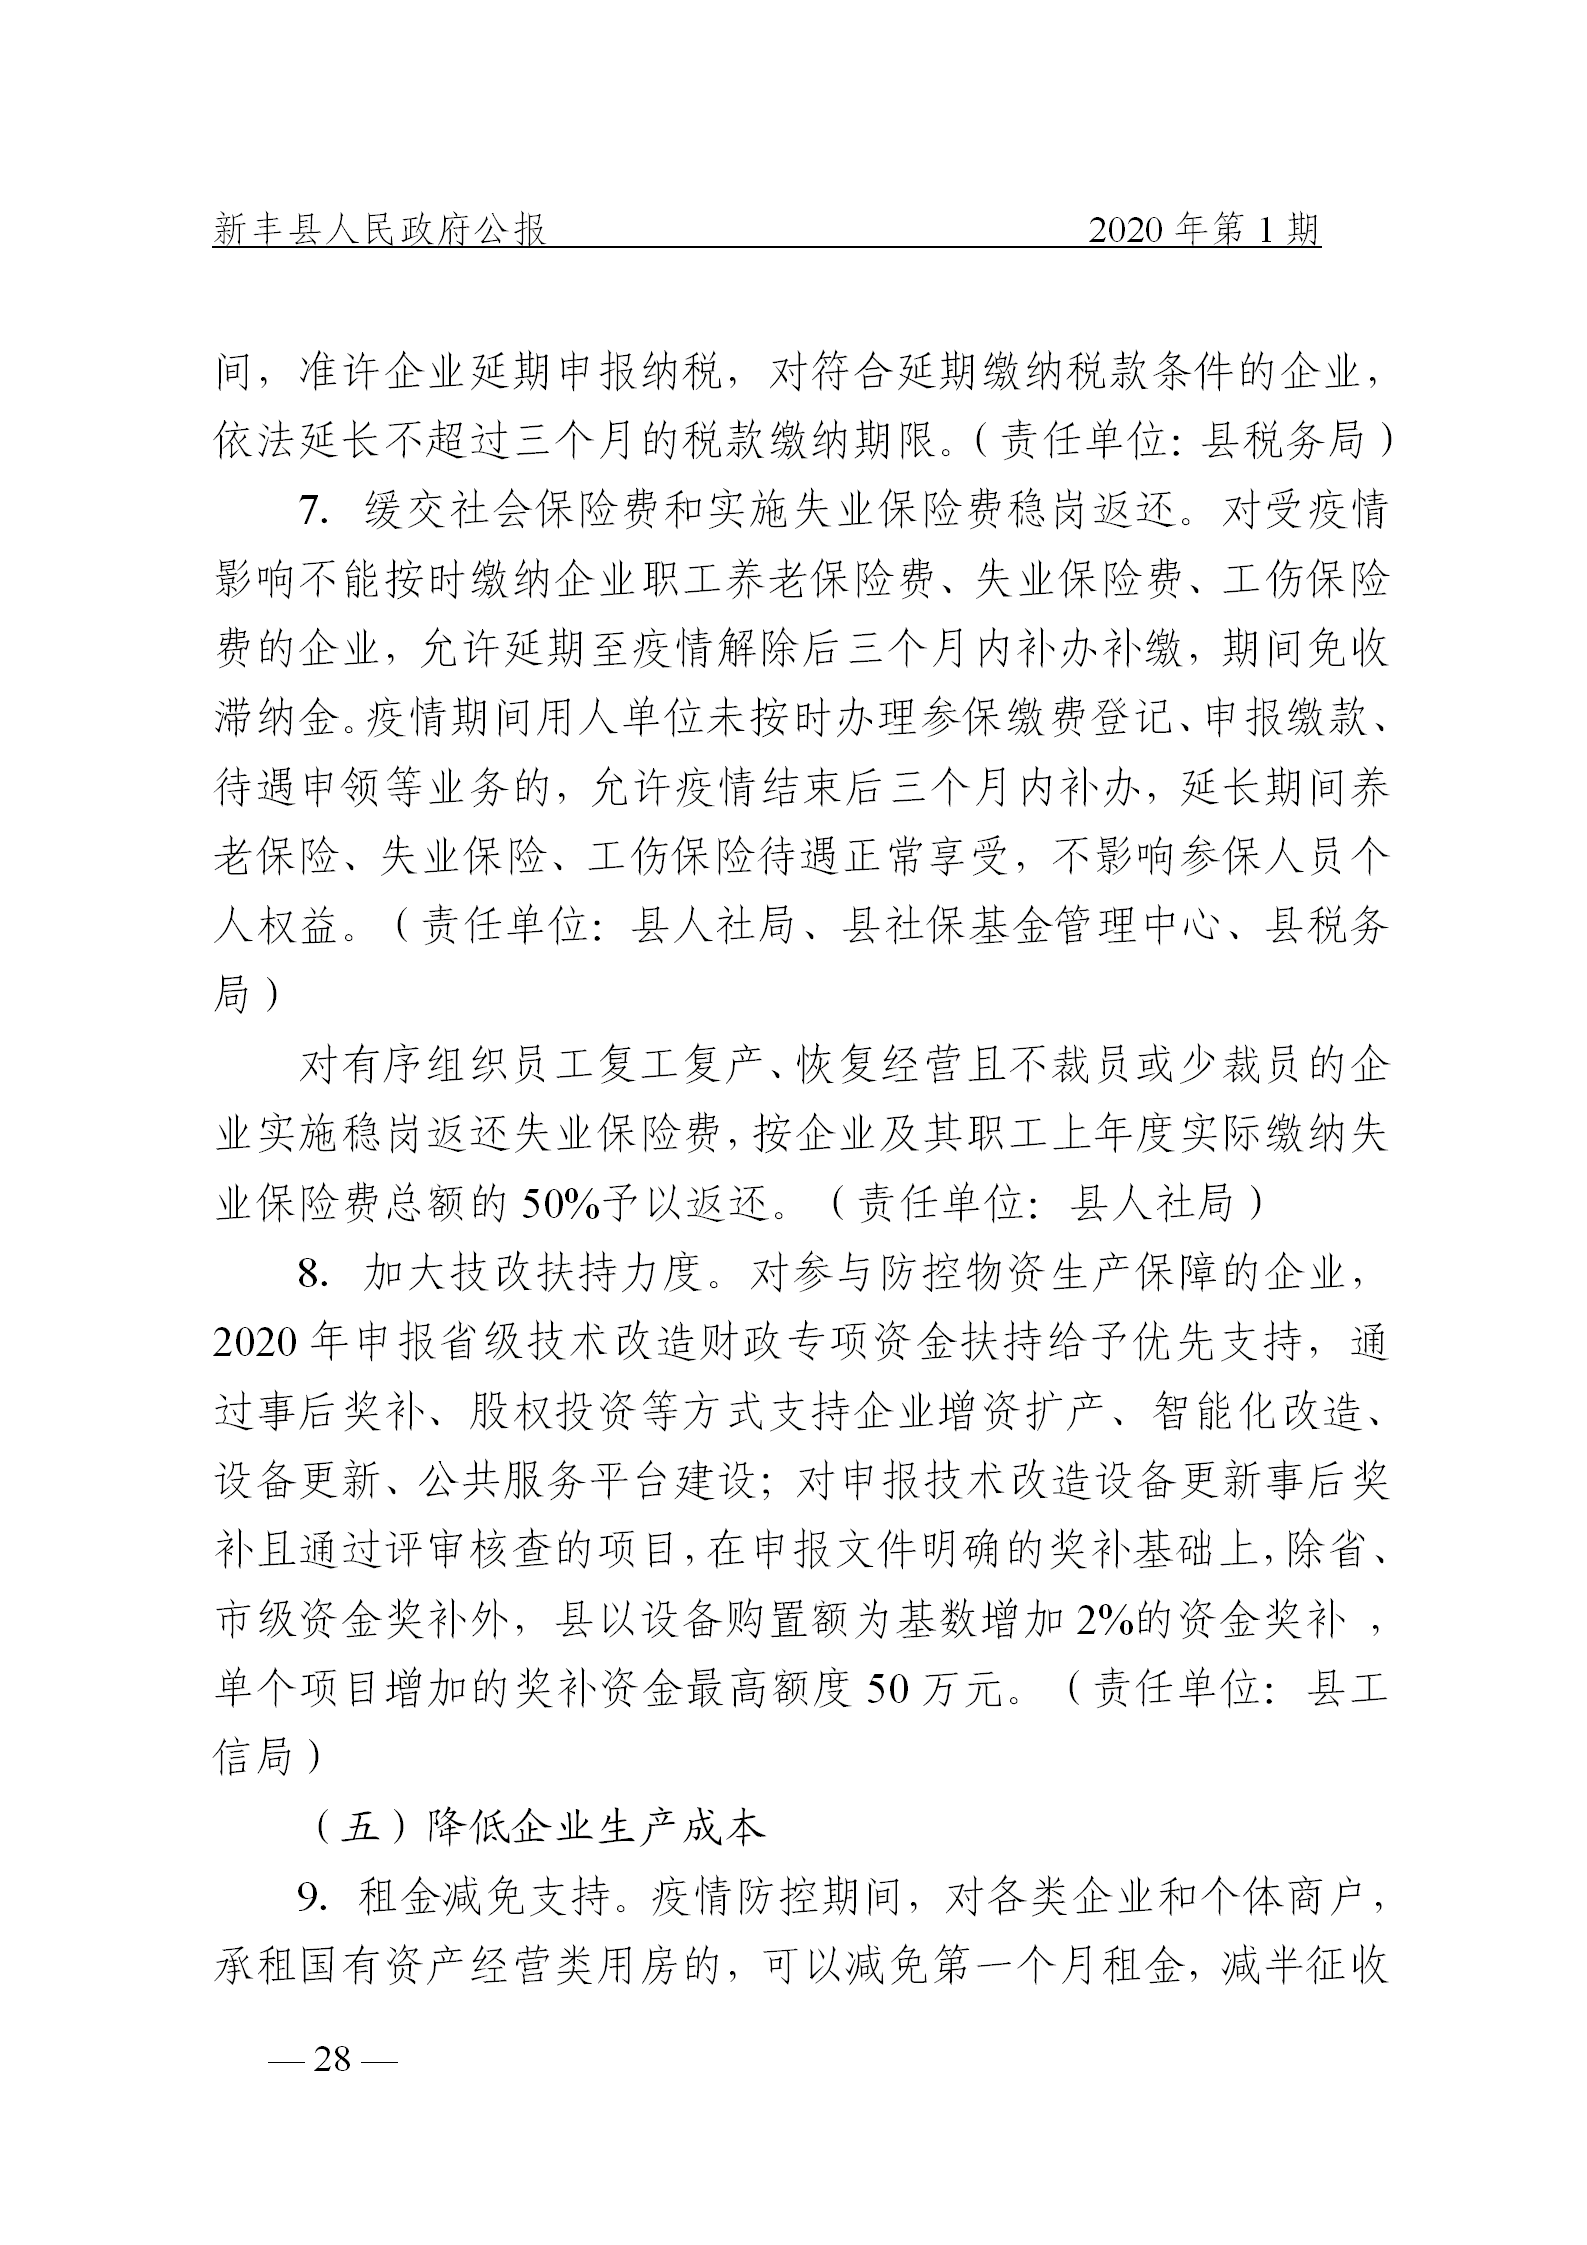 《新丰县人民政府公报》2020年第1期(1)_28.png